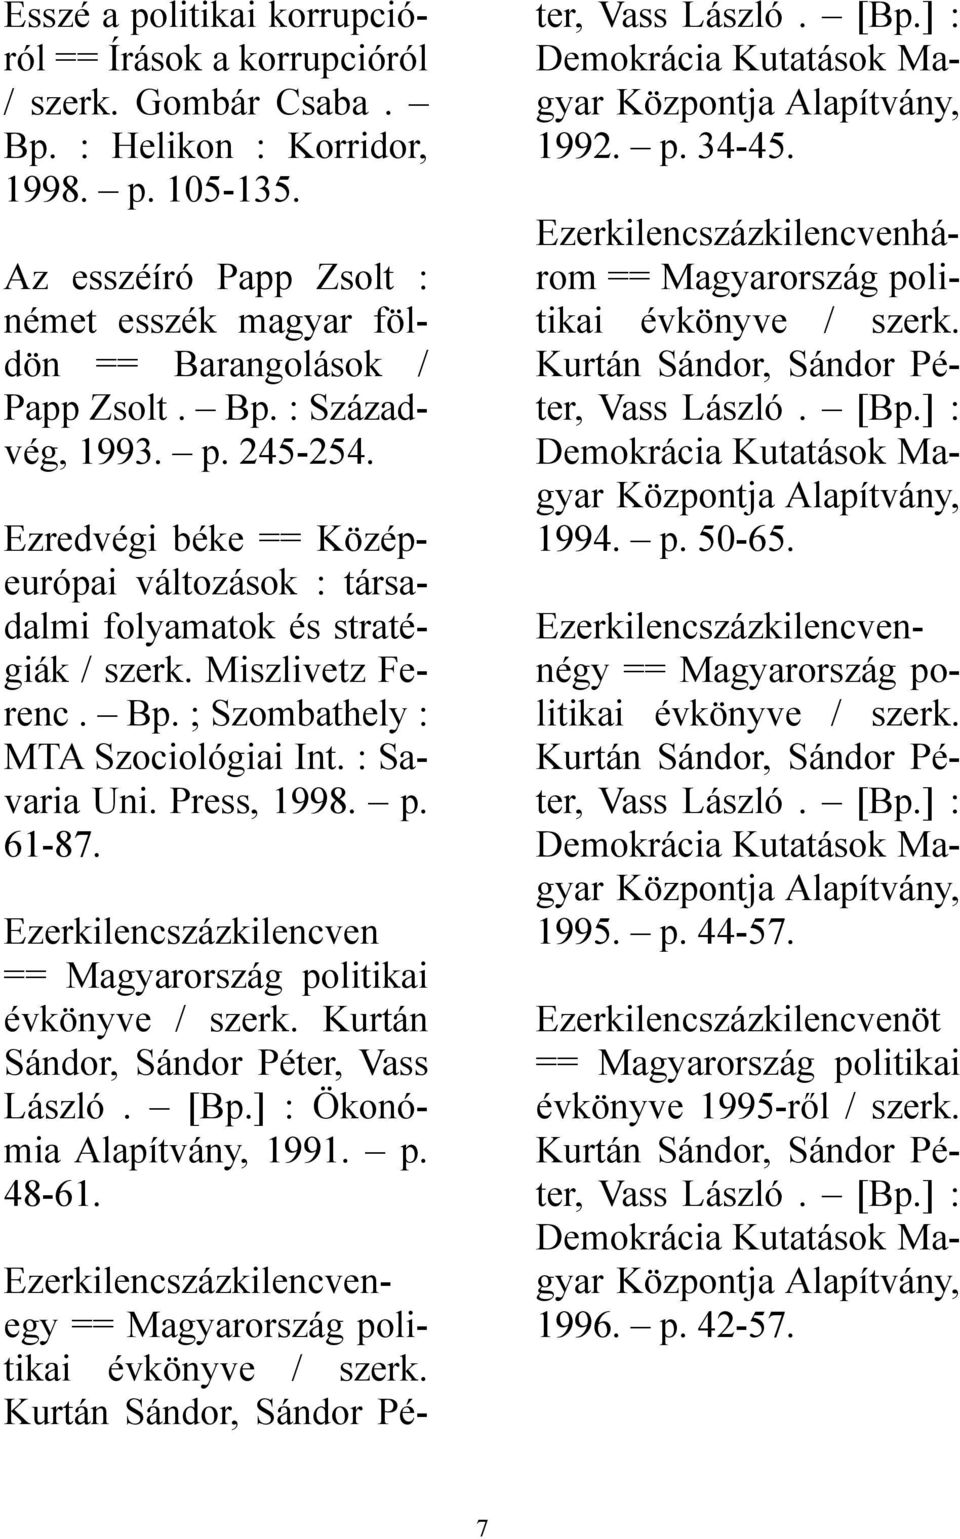 Press, 1998. 61-87. Ezerkilencszázkilencven == Magyarország politikai évkönyve / szerk. Kurtán Sándor, Sándor Péter, Vass László. [B] : Ökonómia Alapítvány, 1991. 48-61.